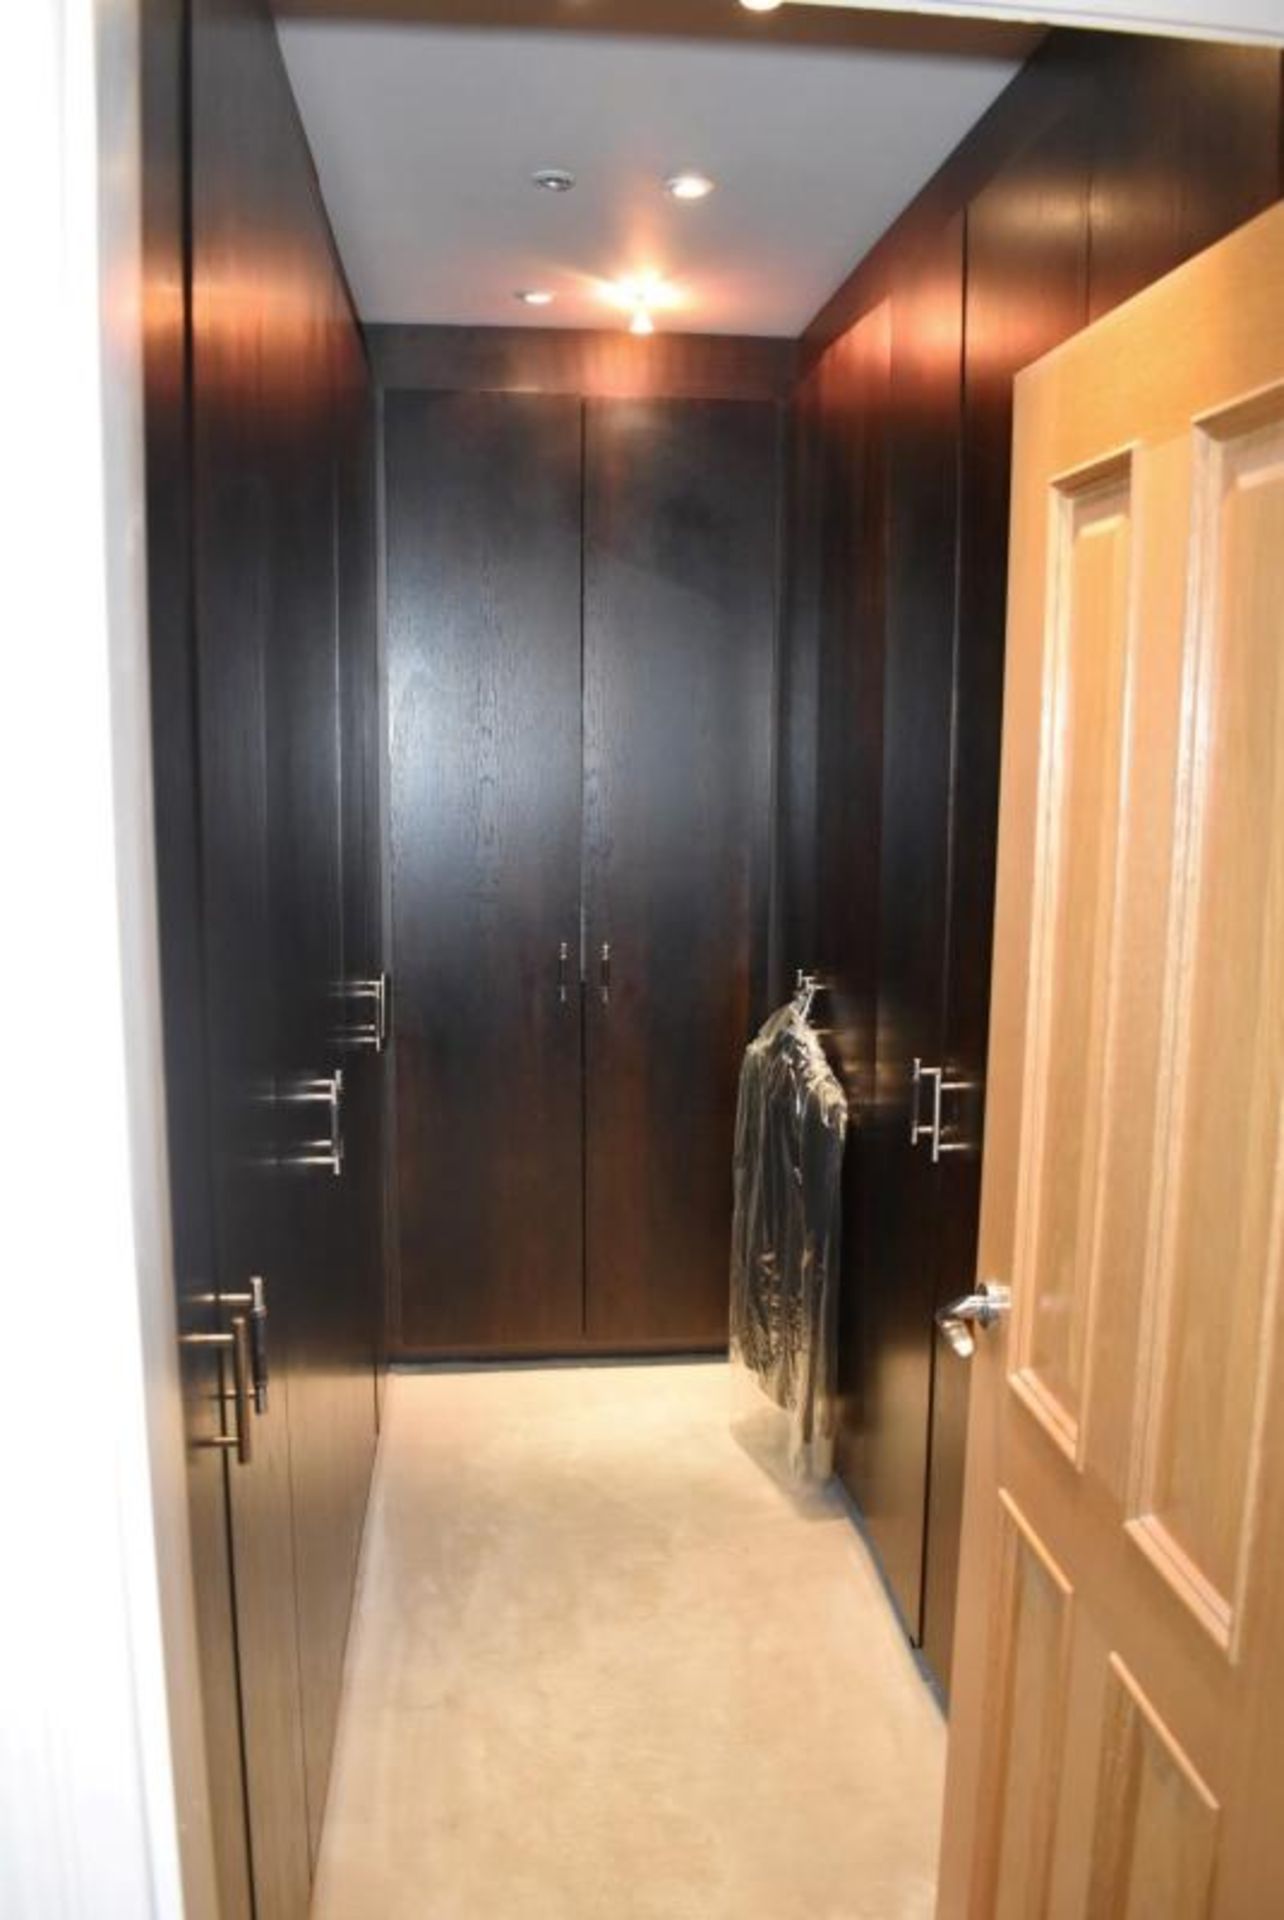 14-Door Walk-in Wardrobe Storage Installation With Dark Wood Veneer Doors - Compises Of 7 x Double D